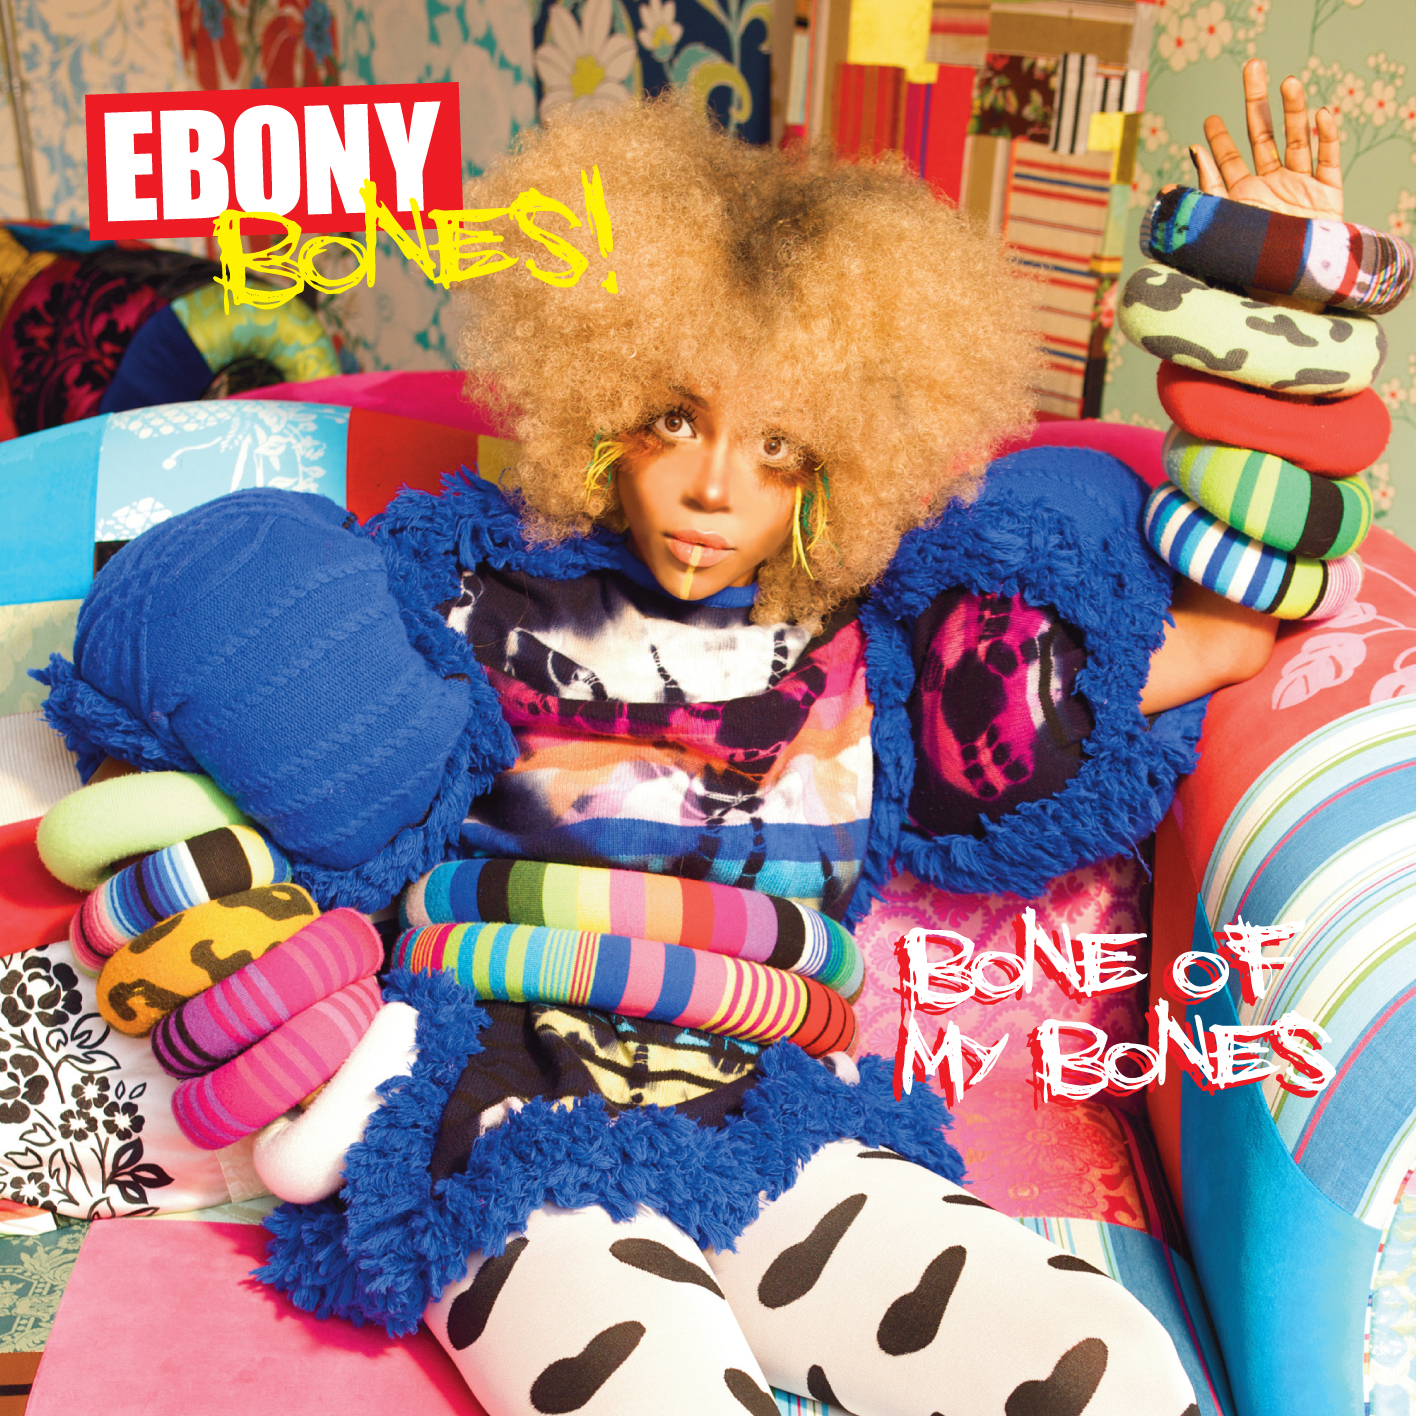 Ebony bones bones of my bones rar